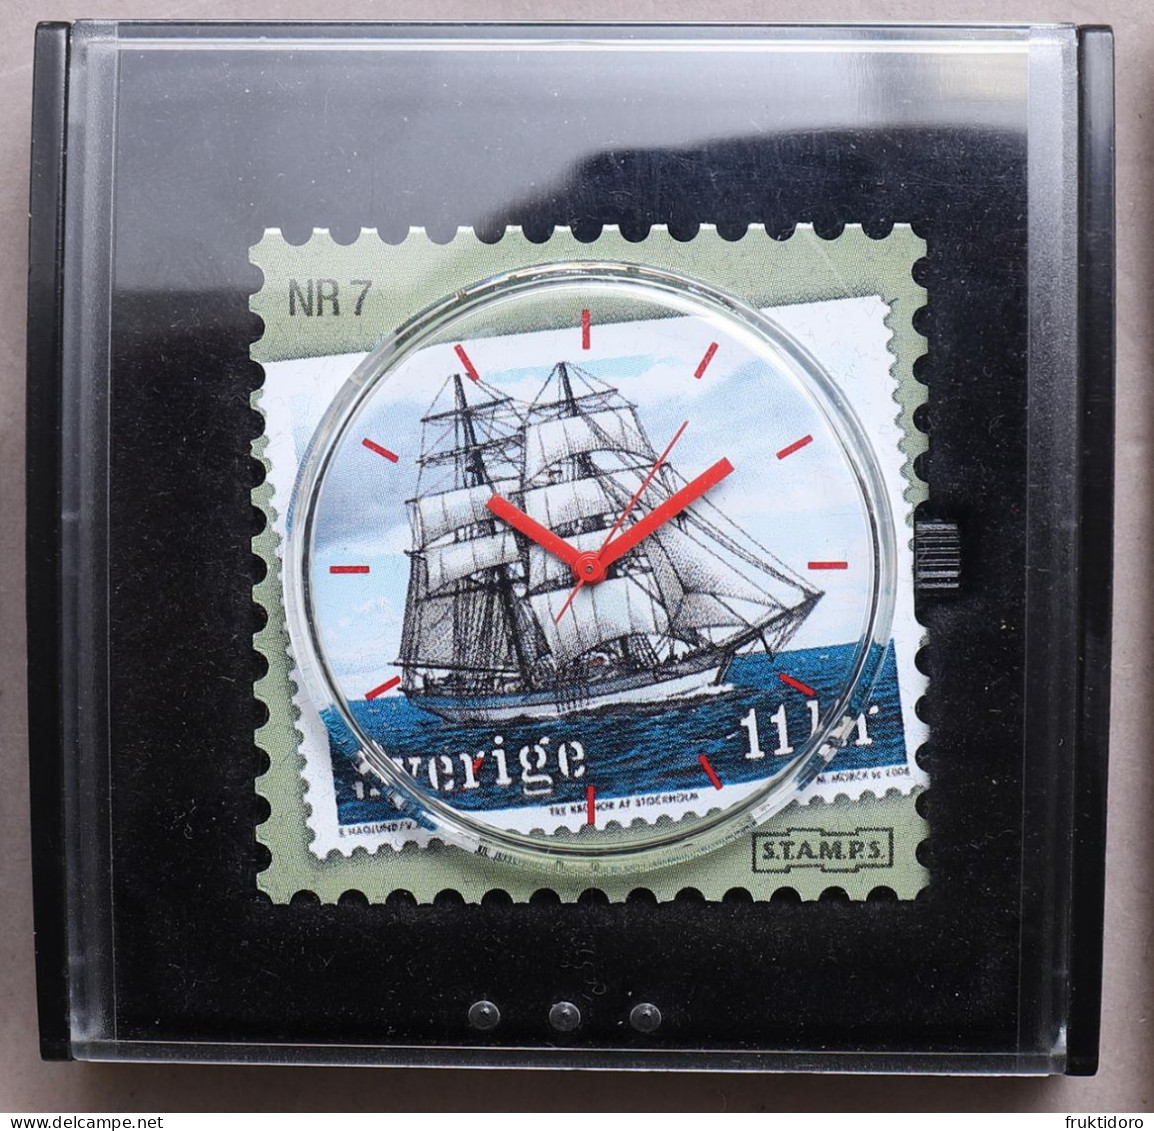 Sweden Stamp Clock Nr 7 - Sailboat T/S Gunilla - 2008 - Watches: Modern